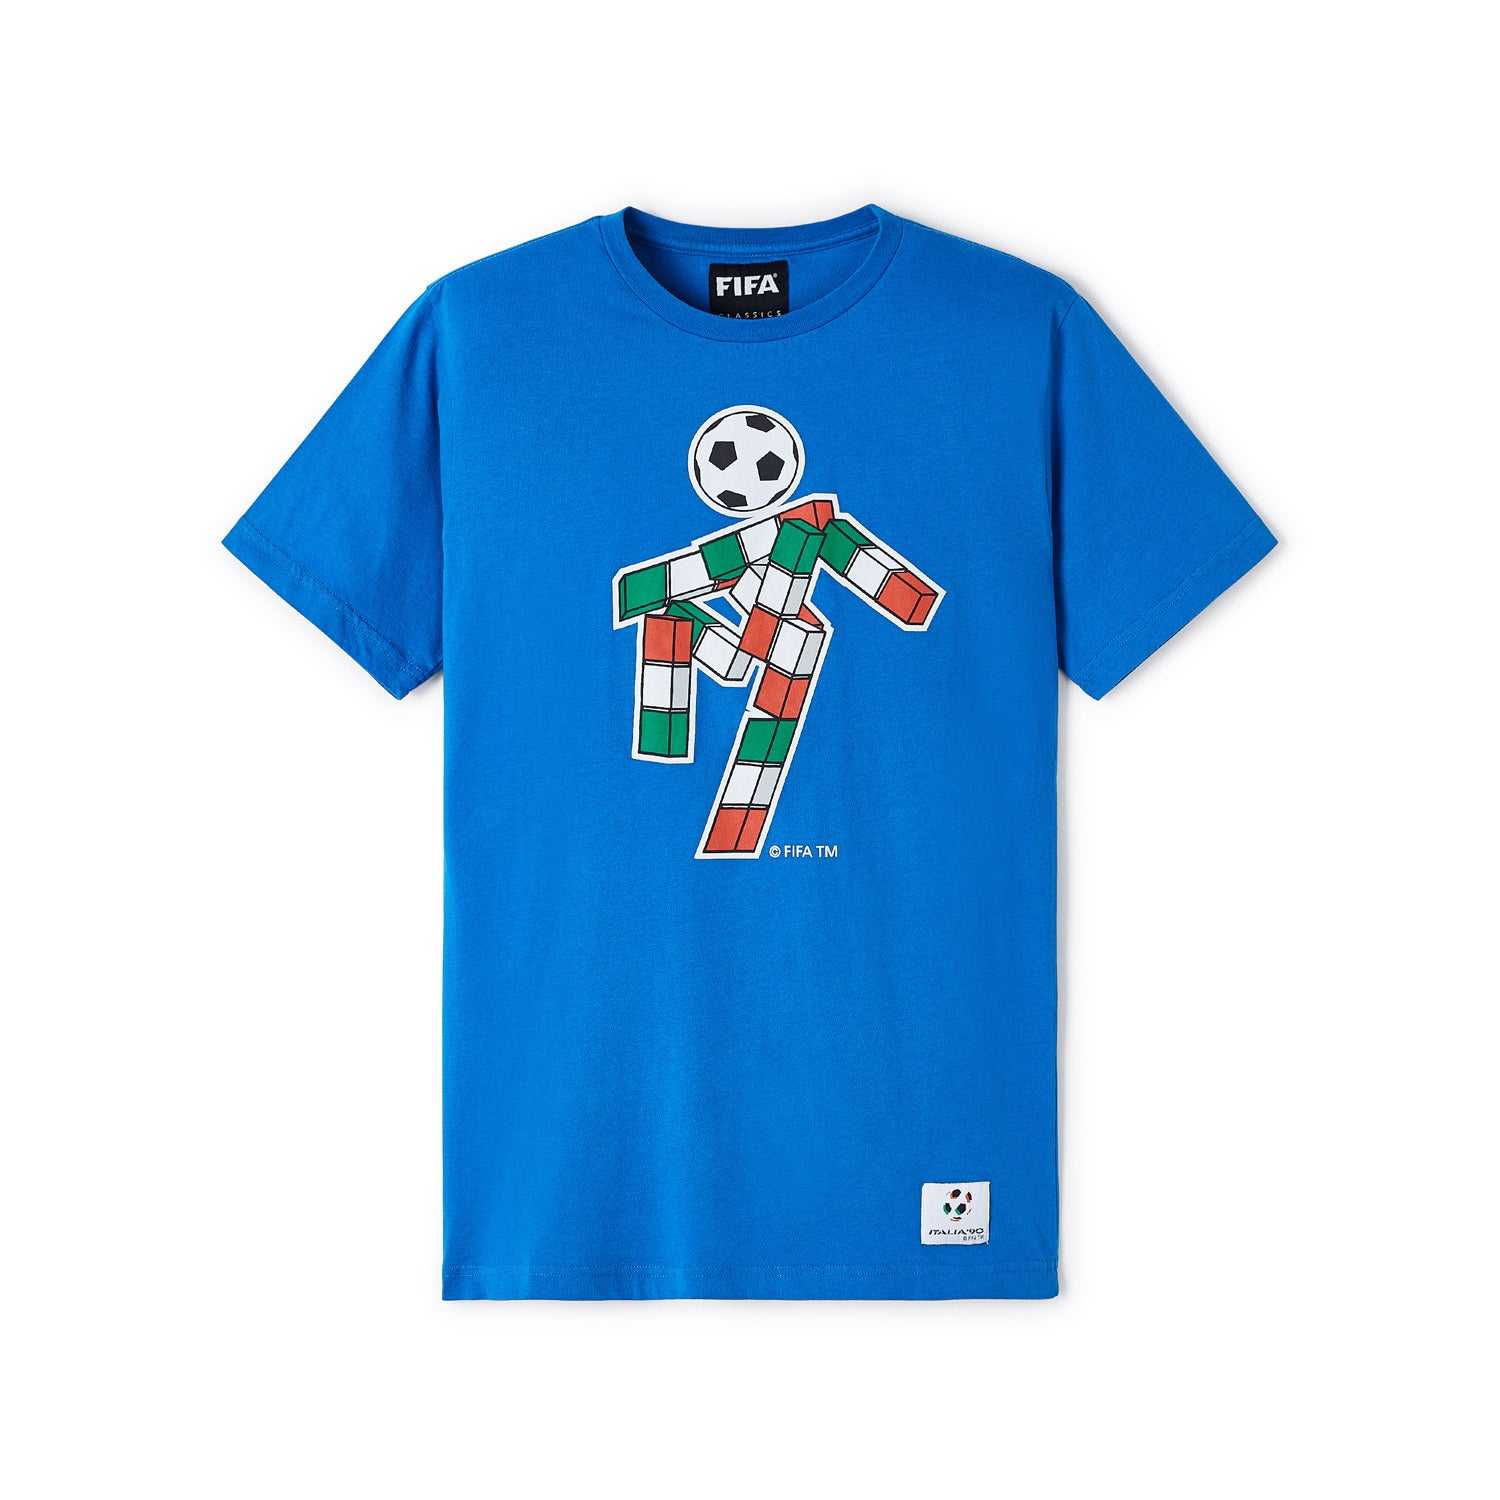 FIFA Classics 1990 World Cup Mascot T-Shirt